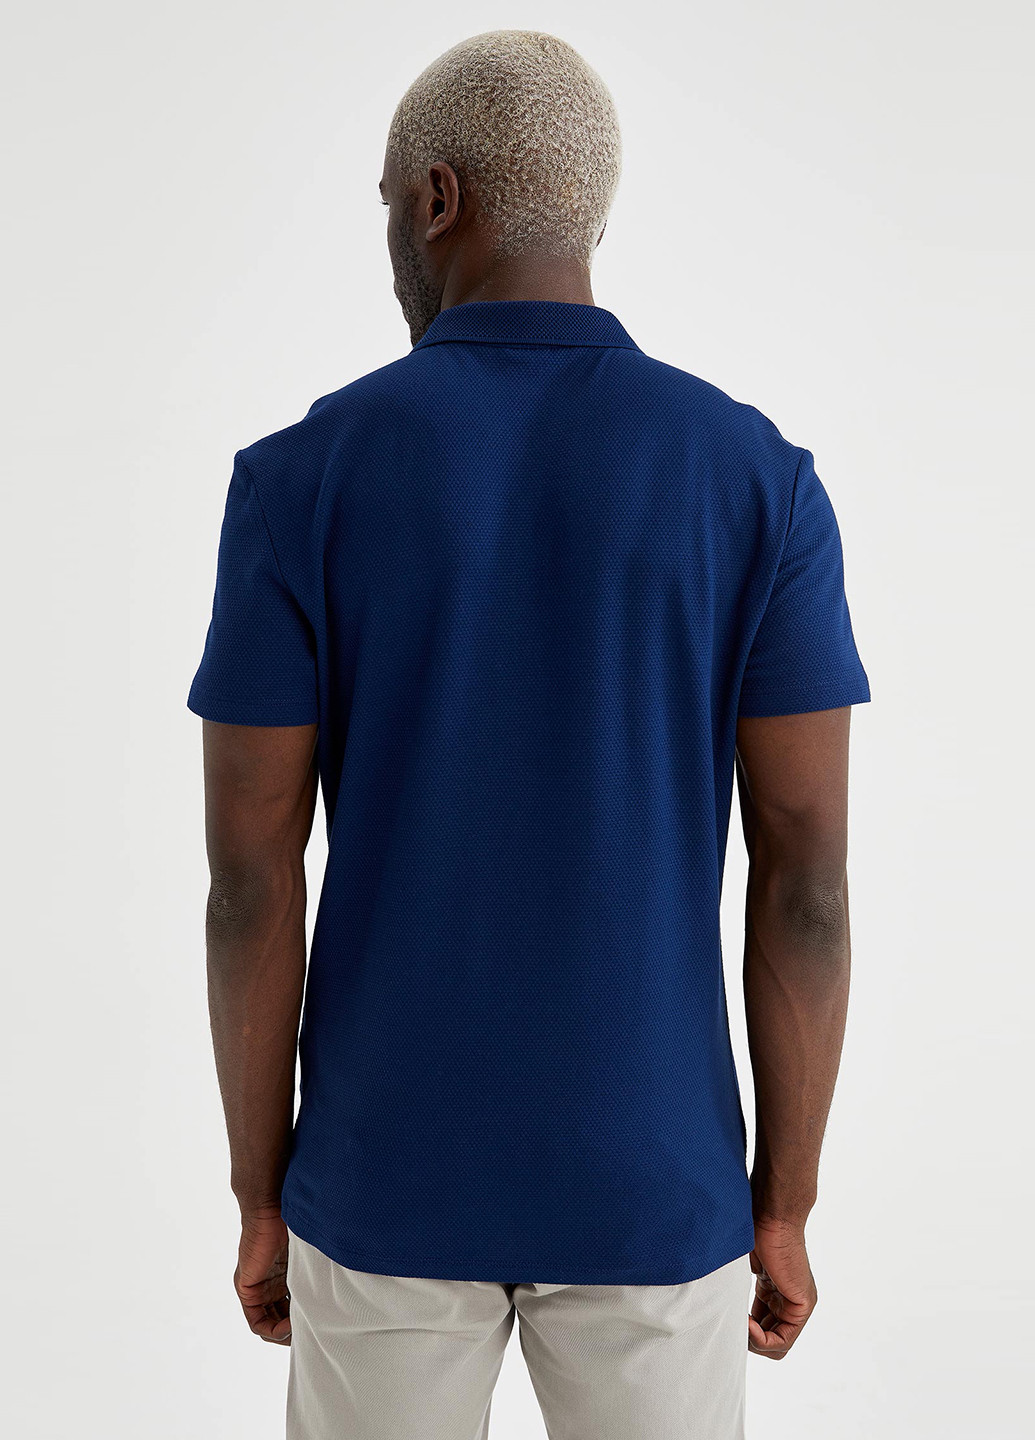 Синяя футболка-поло для мужчин DeFacto однотонная